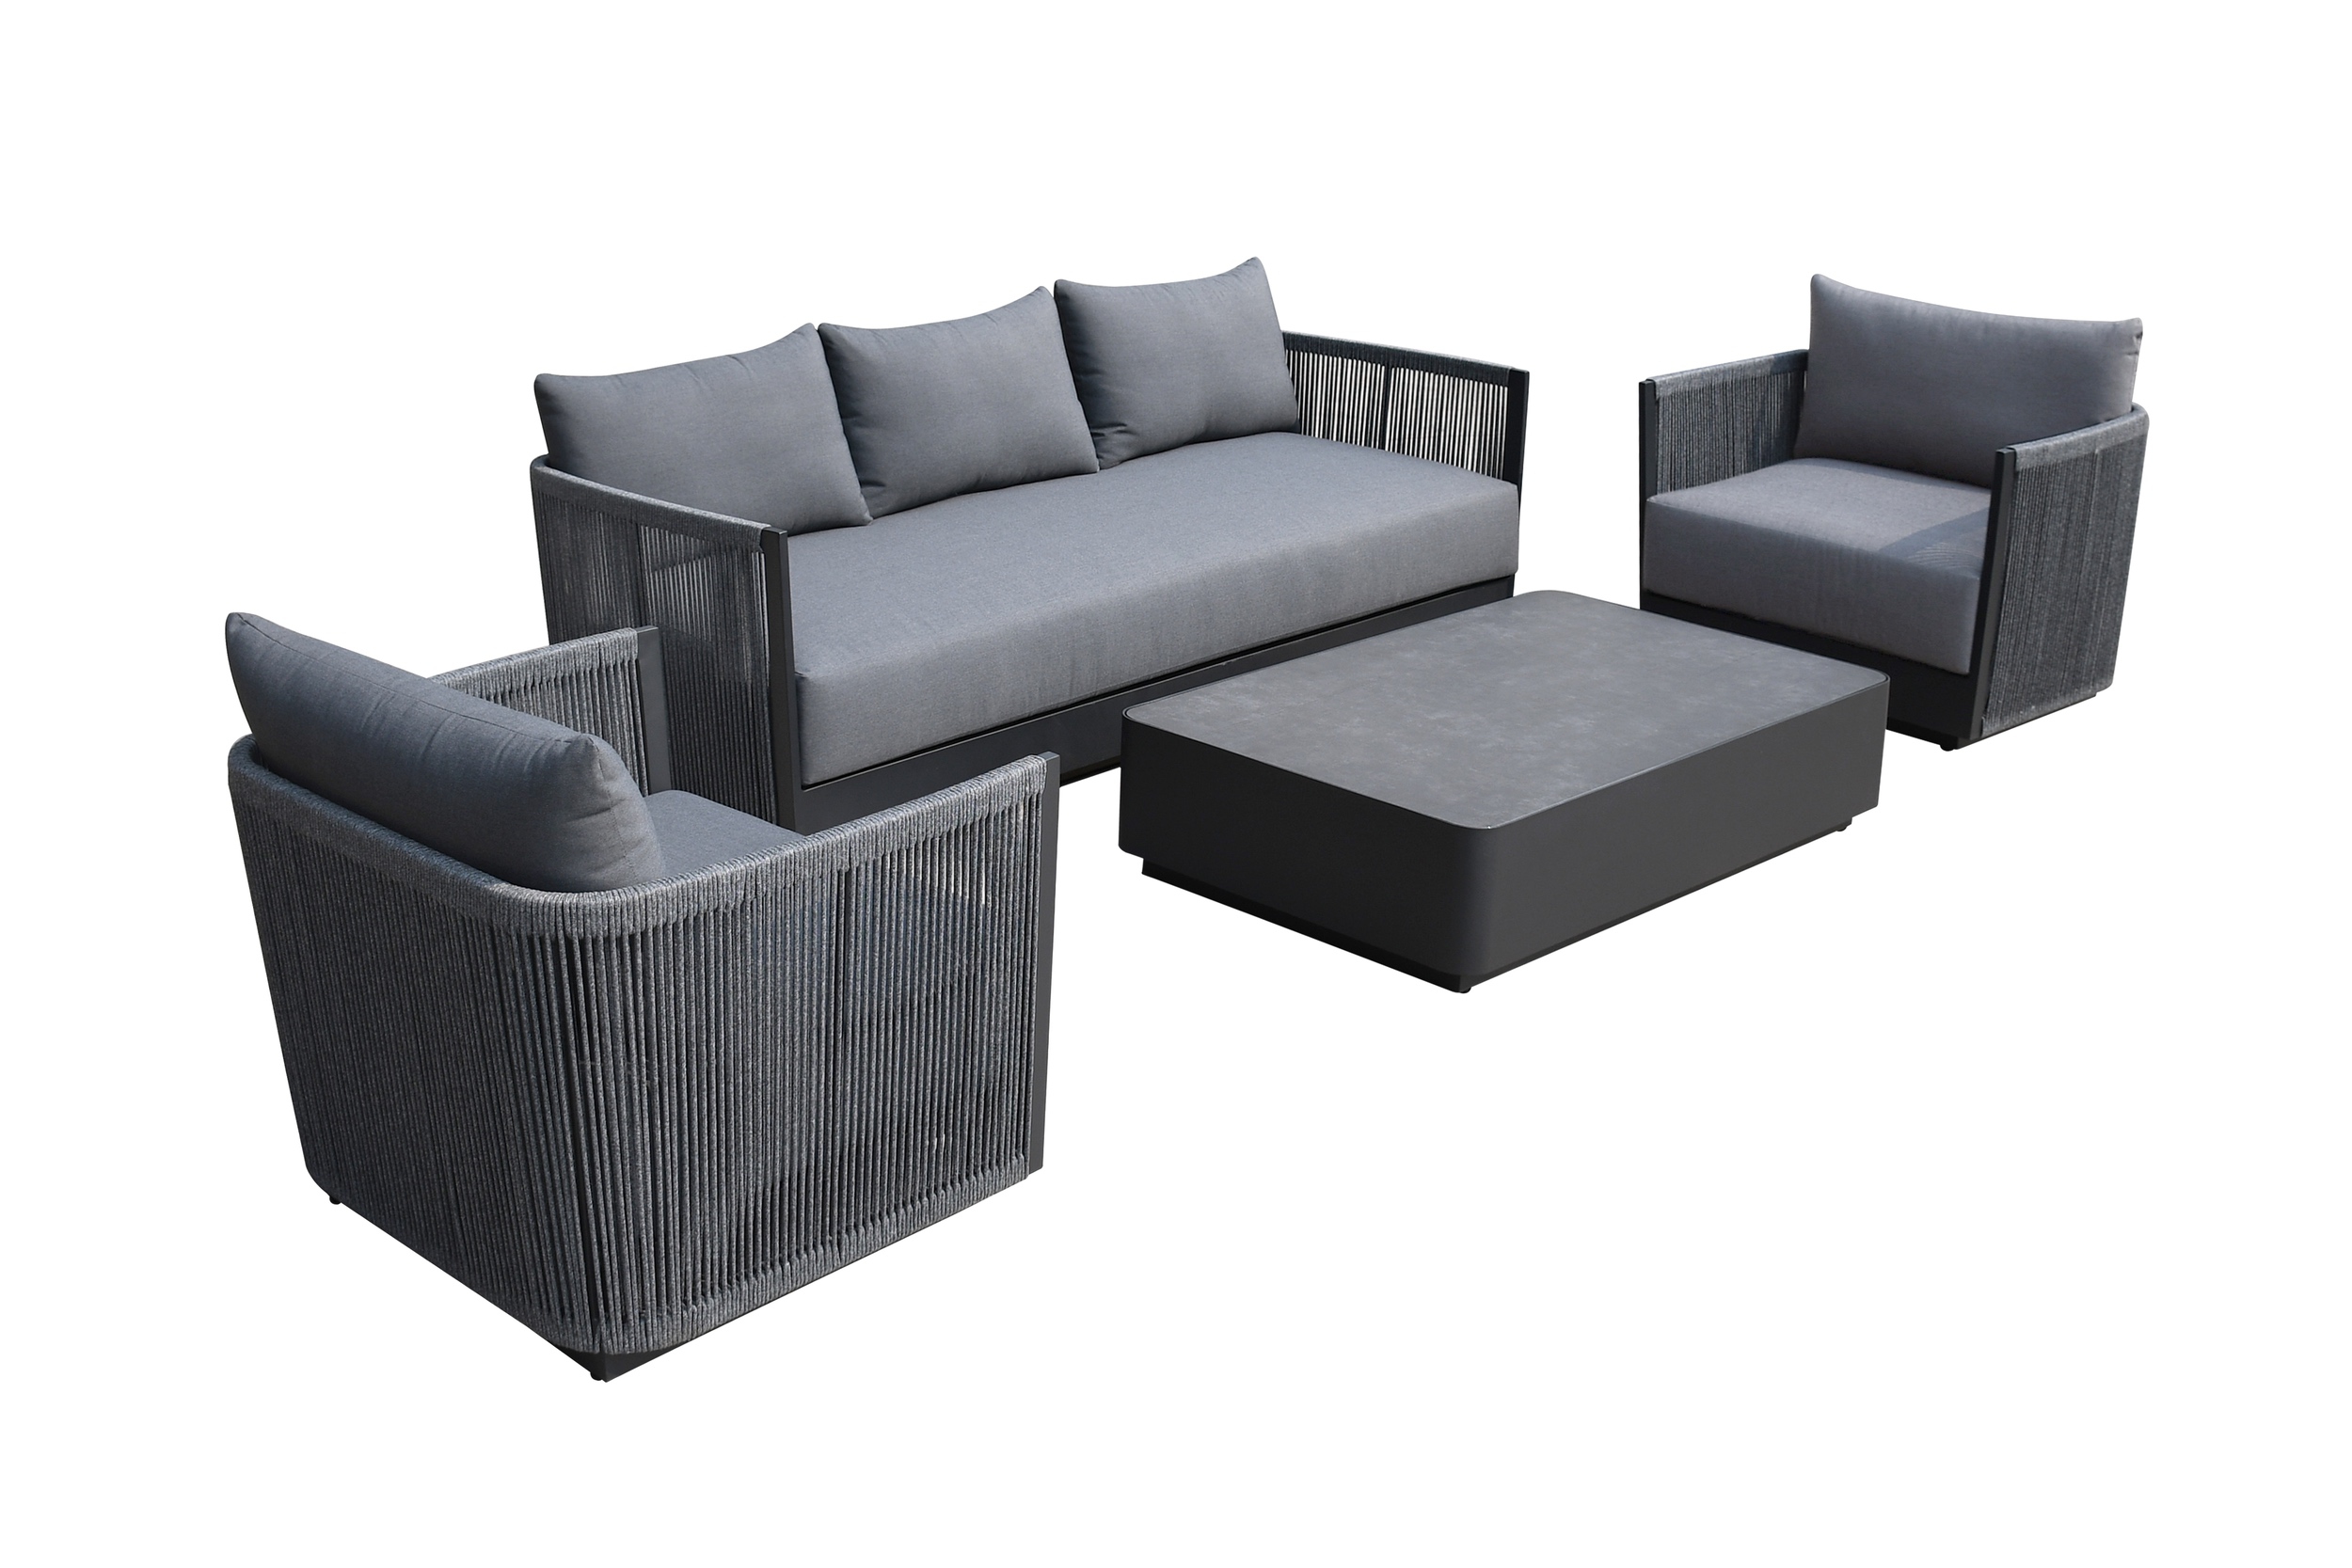 Renava Bali – Outdoor Black and Grey Sofa Set